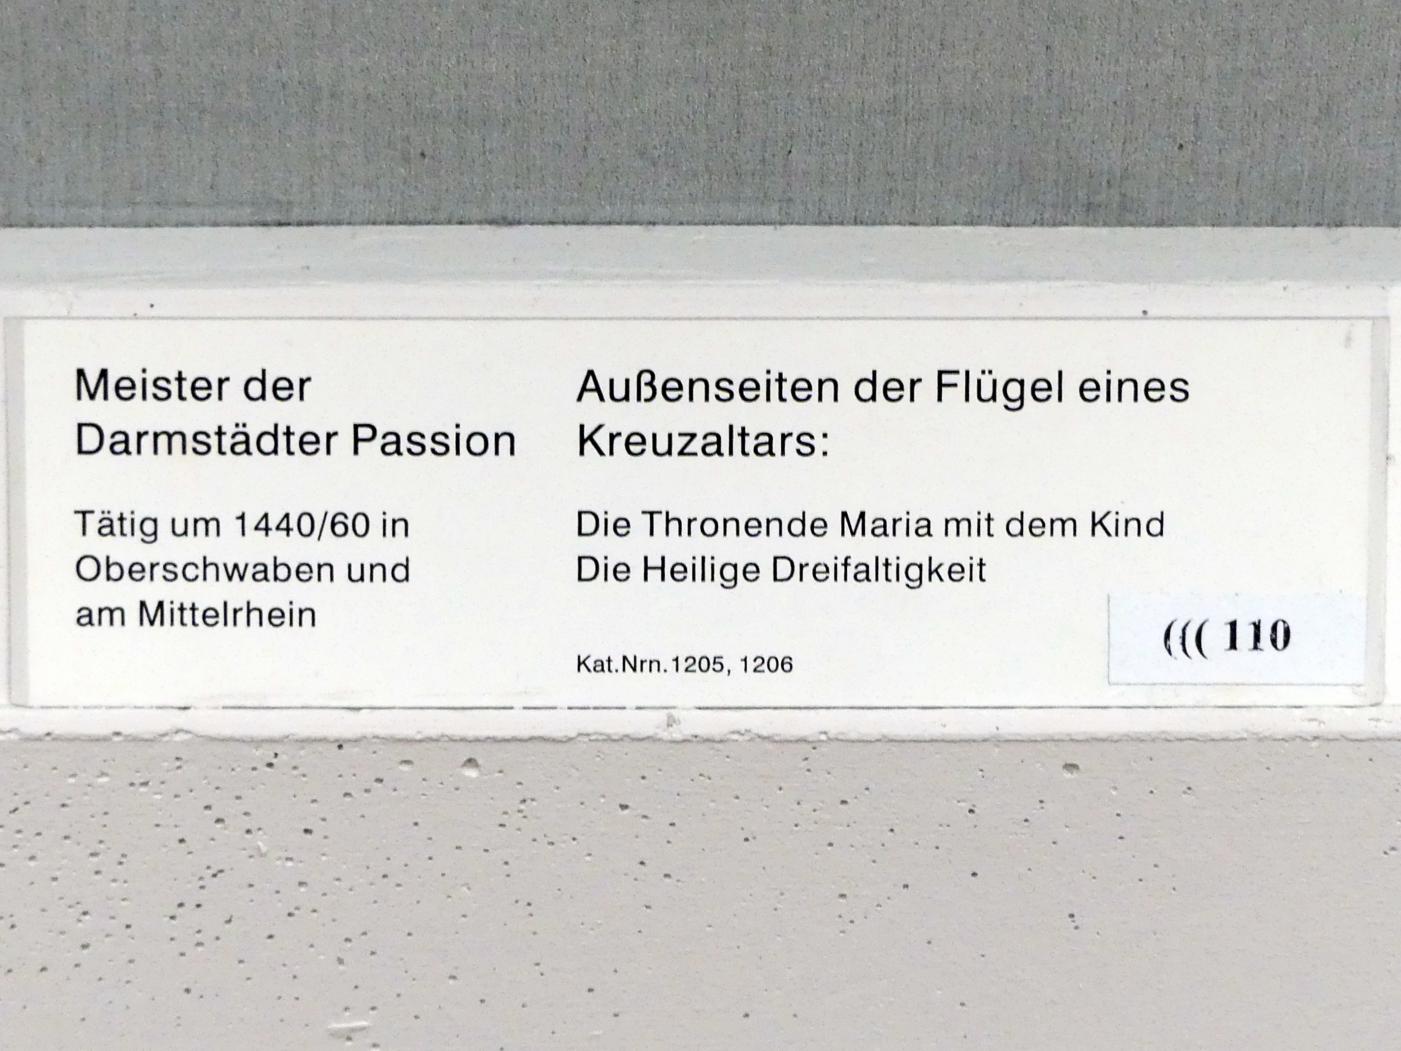 Meister der Darmstädter Passion (1435–1460), Außenseiten der Flügel eines Kreuzaltares, Berlin, Gemäldegalerie ("Berliner Wunder"), Saal II, um 1440–1460, Bild 2/2